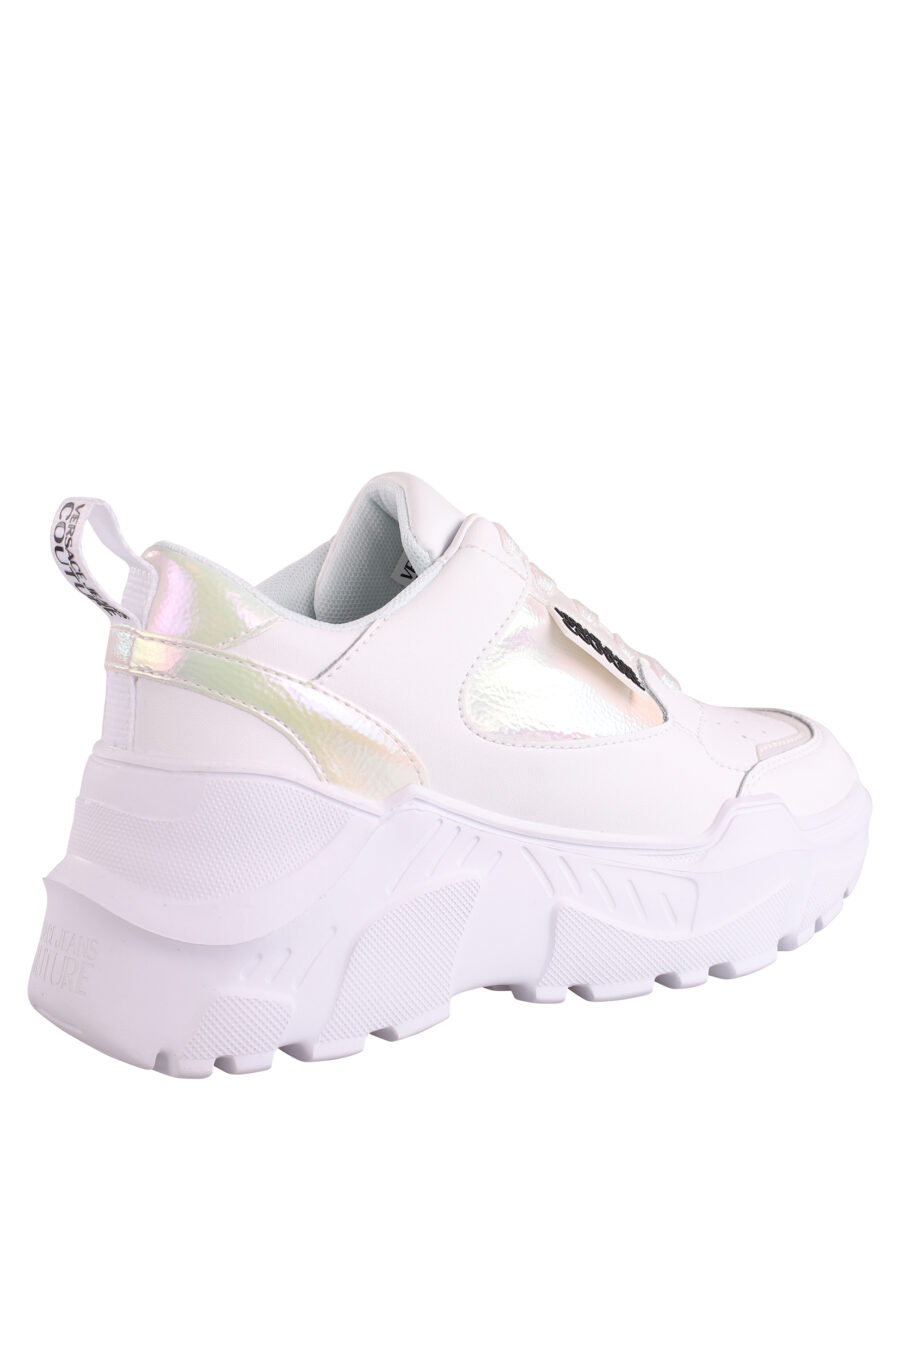 Zapatillas blancas con detalles en holograma y plataforma - IMG 9012